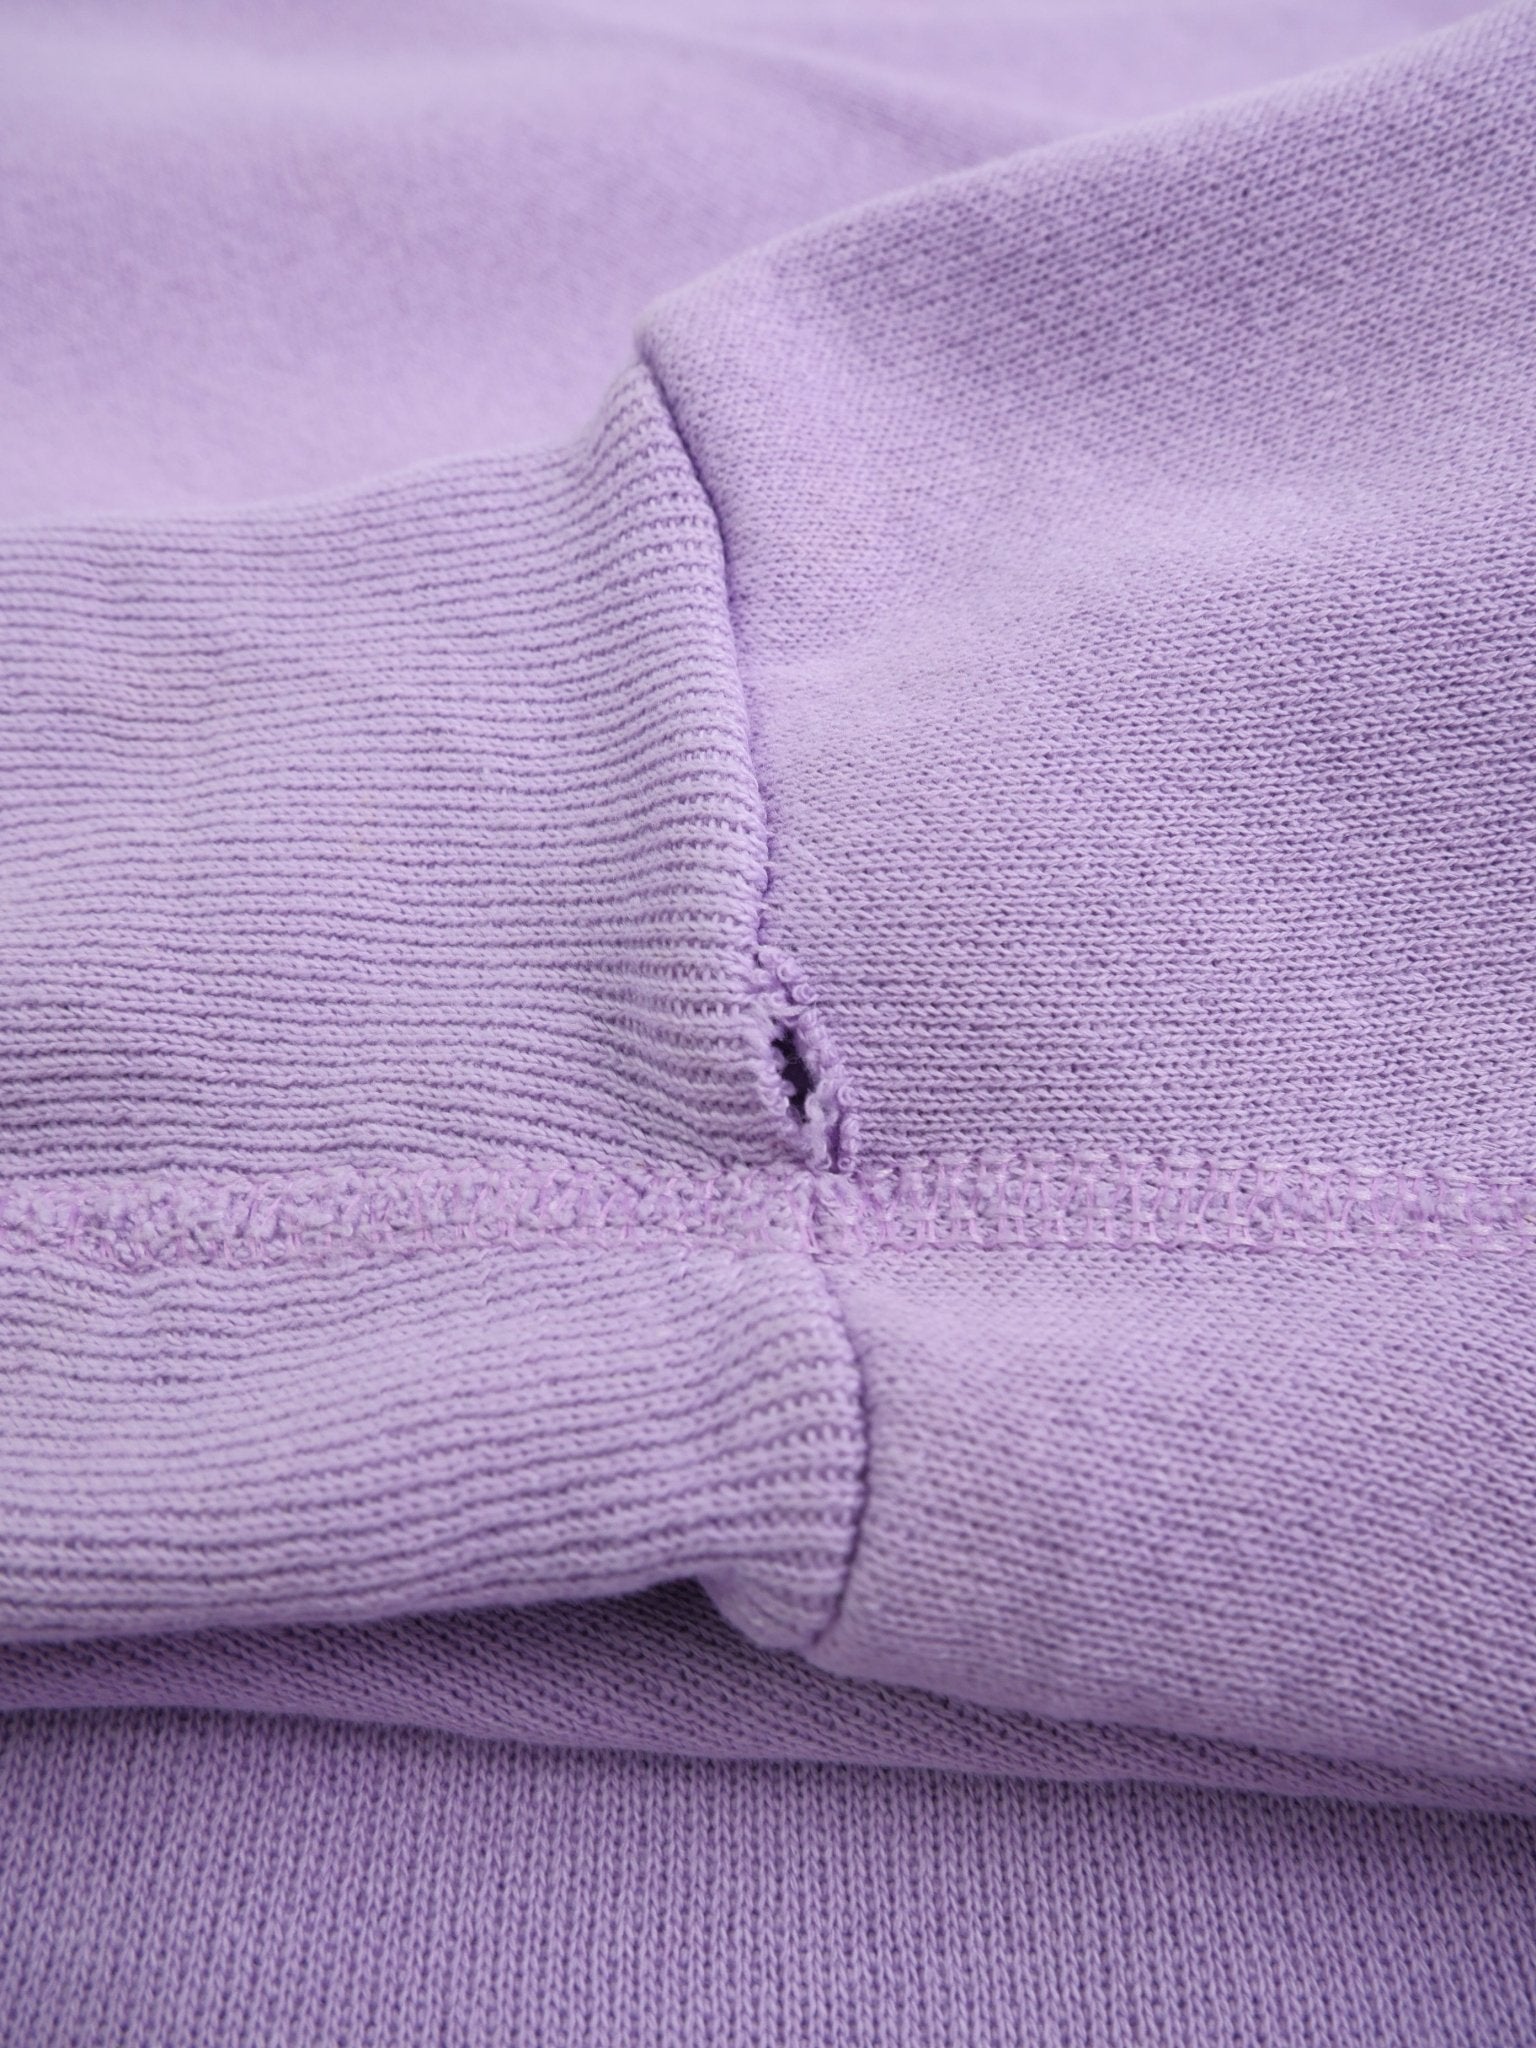 Marmaduke 1986 printed Vintage purple Sweater - Peeces